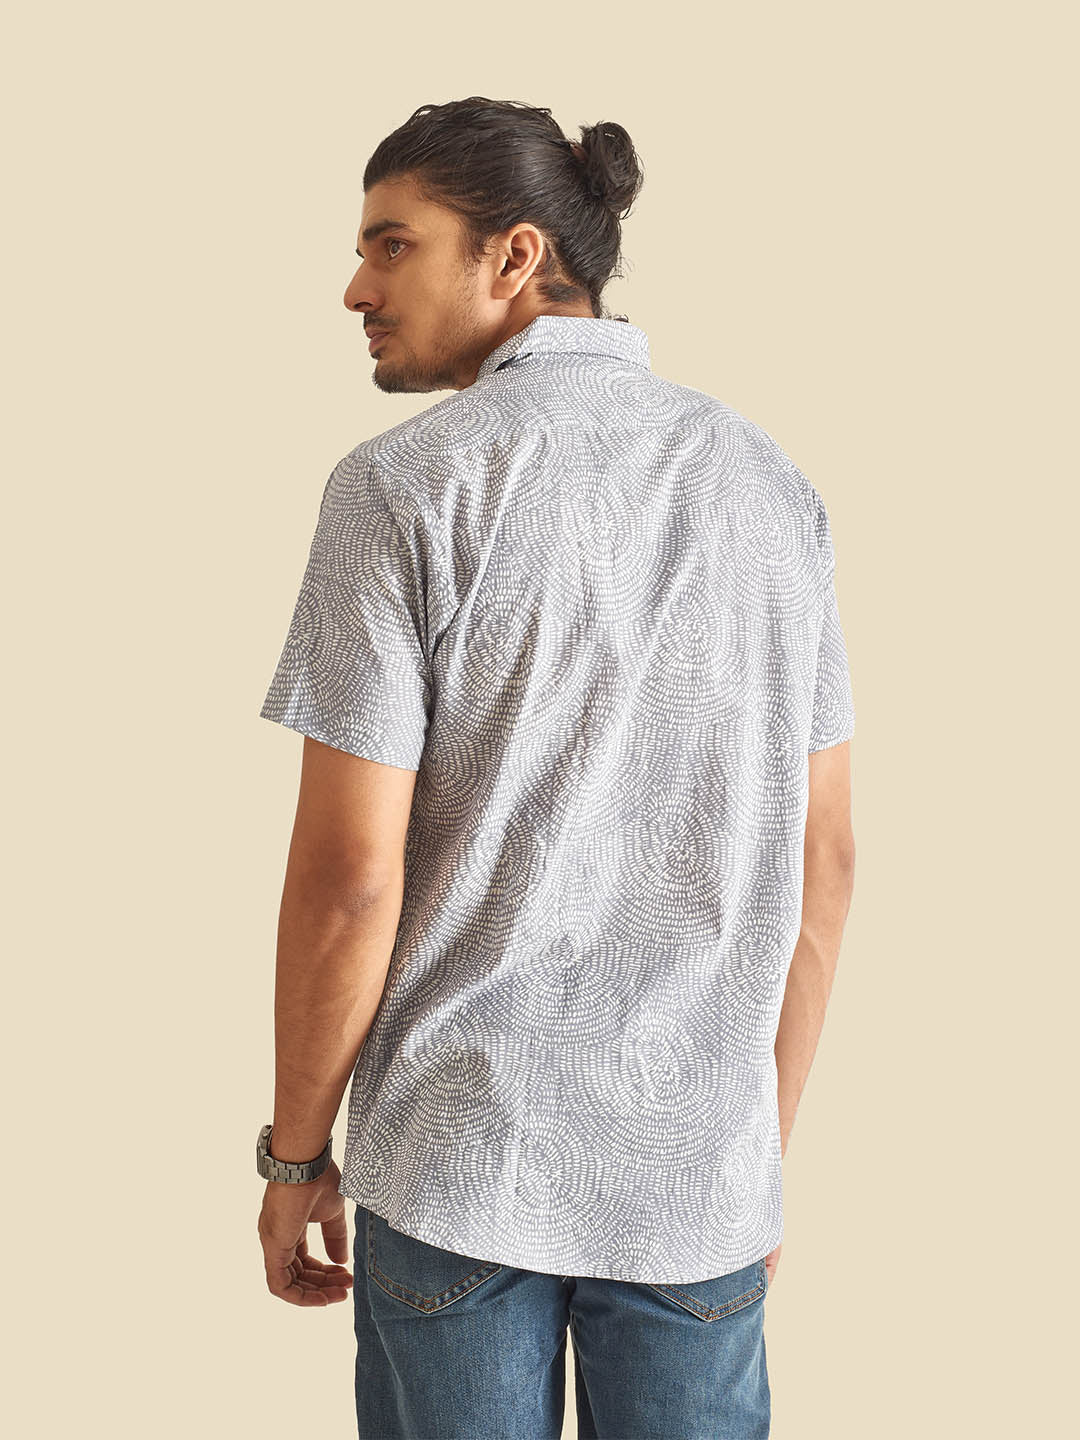 Grey Abstract Circles Printed Halfsleeves Cotton Shirt